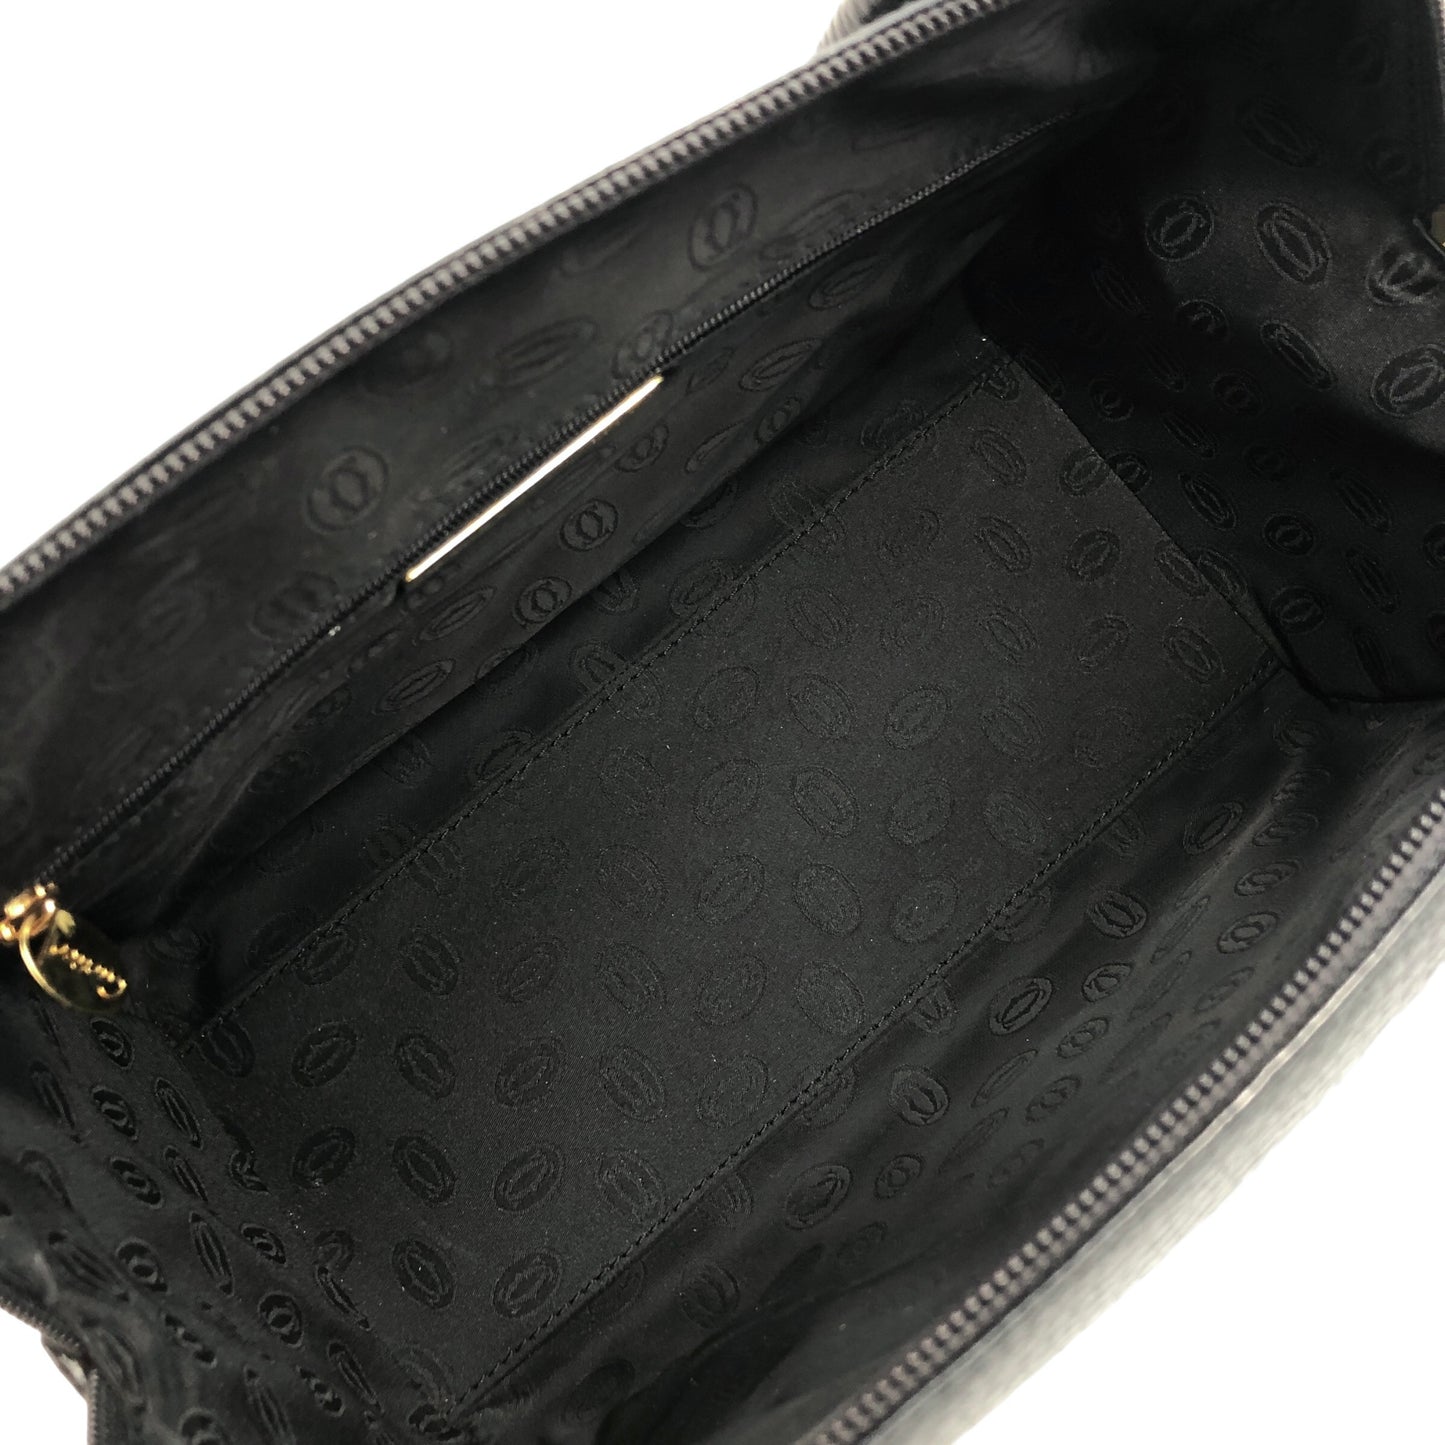 Cartier Leather Handbag Boston bag Black Vintage aki576